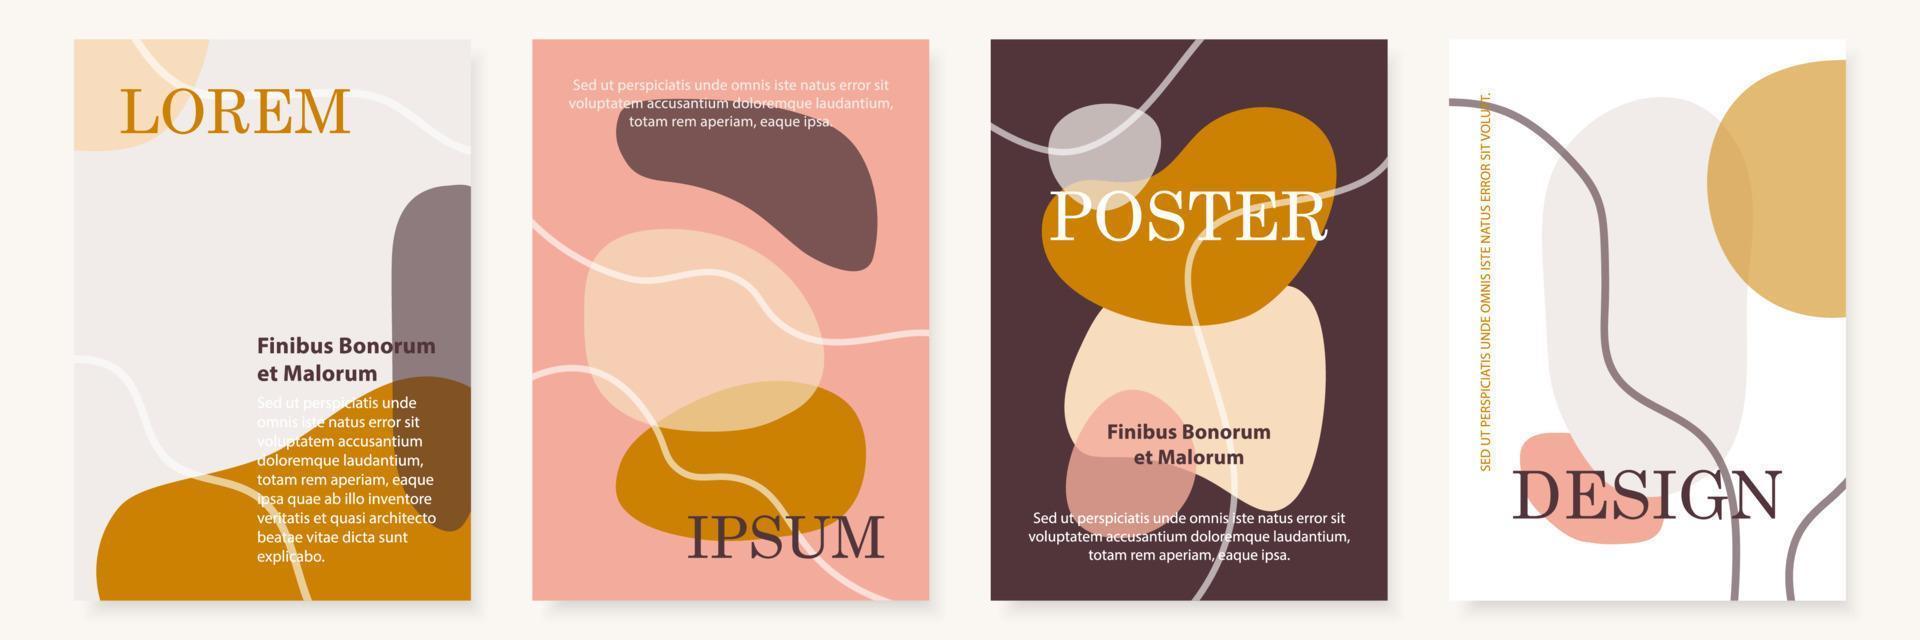 conjunto de plantillas de diseño de portada moderna. estilo collage contemporáneo vector